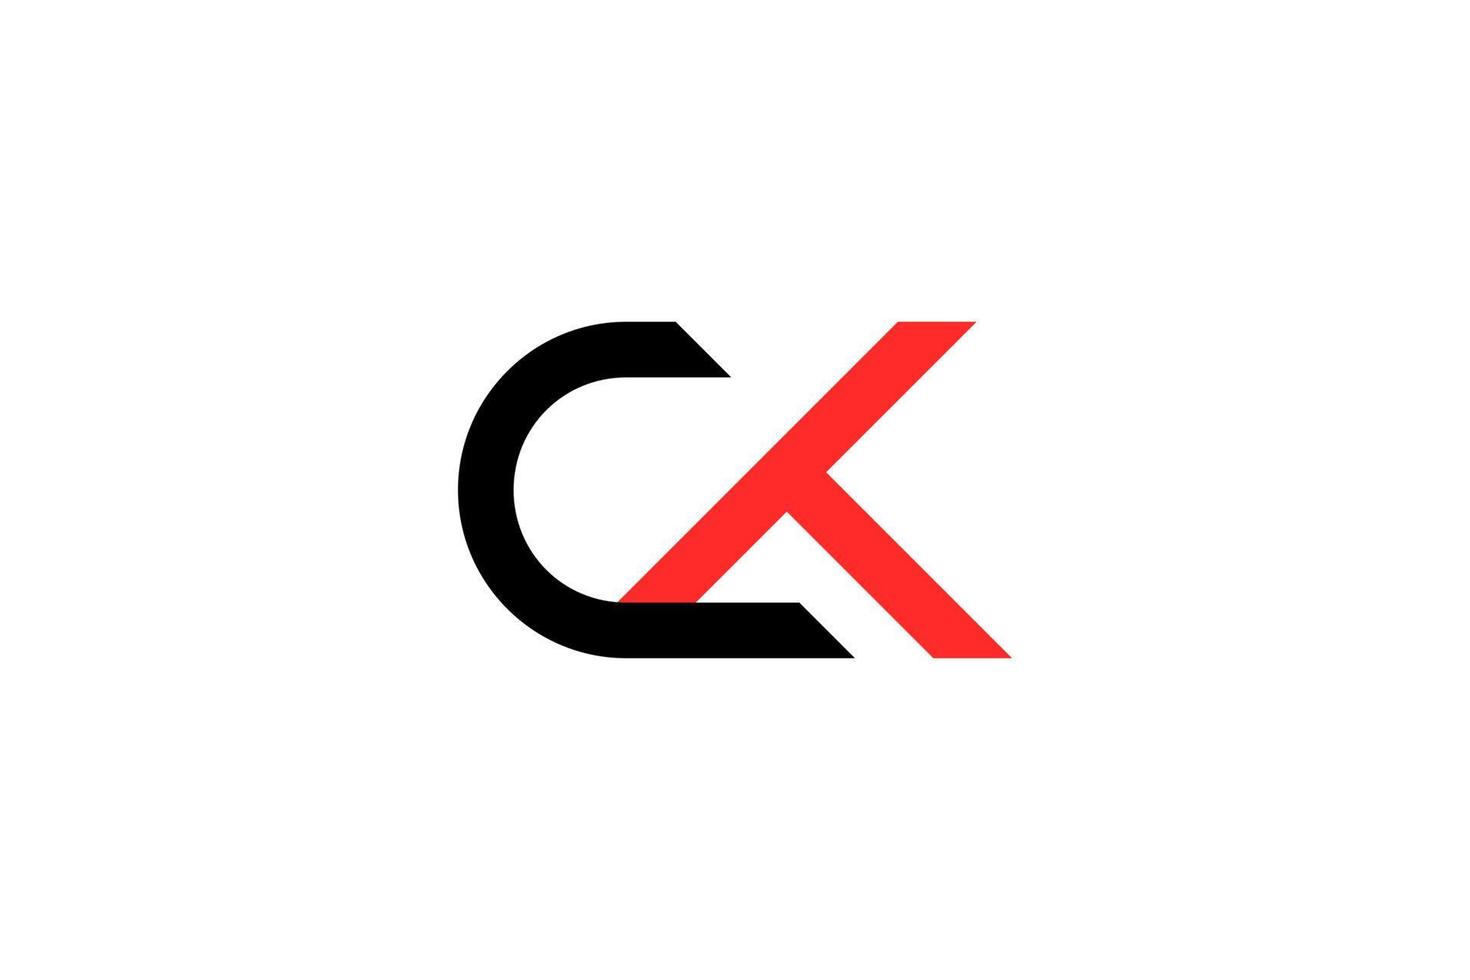 modelo de vetor de design de logotipo ck ck inicial